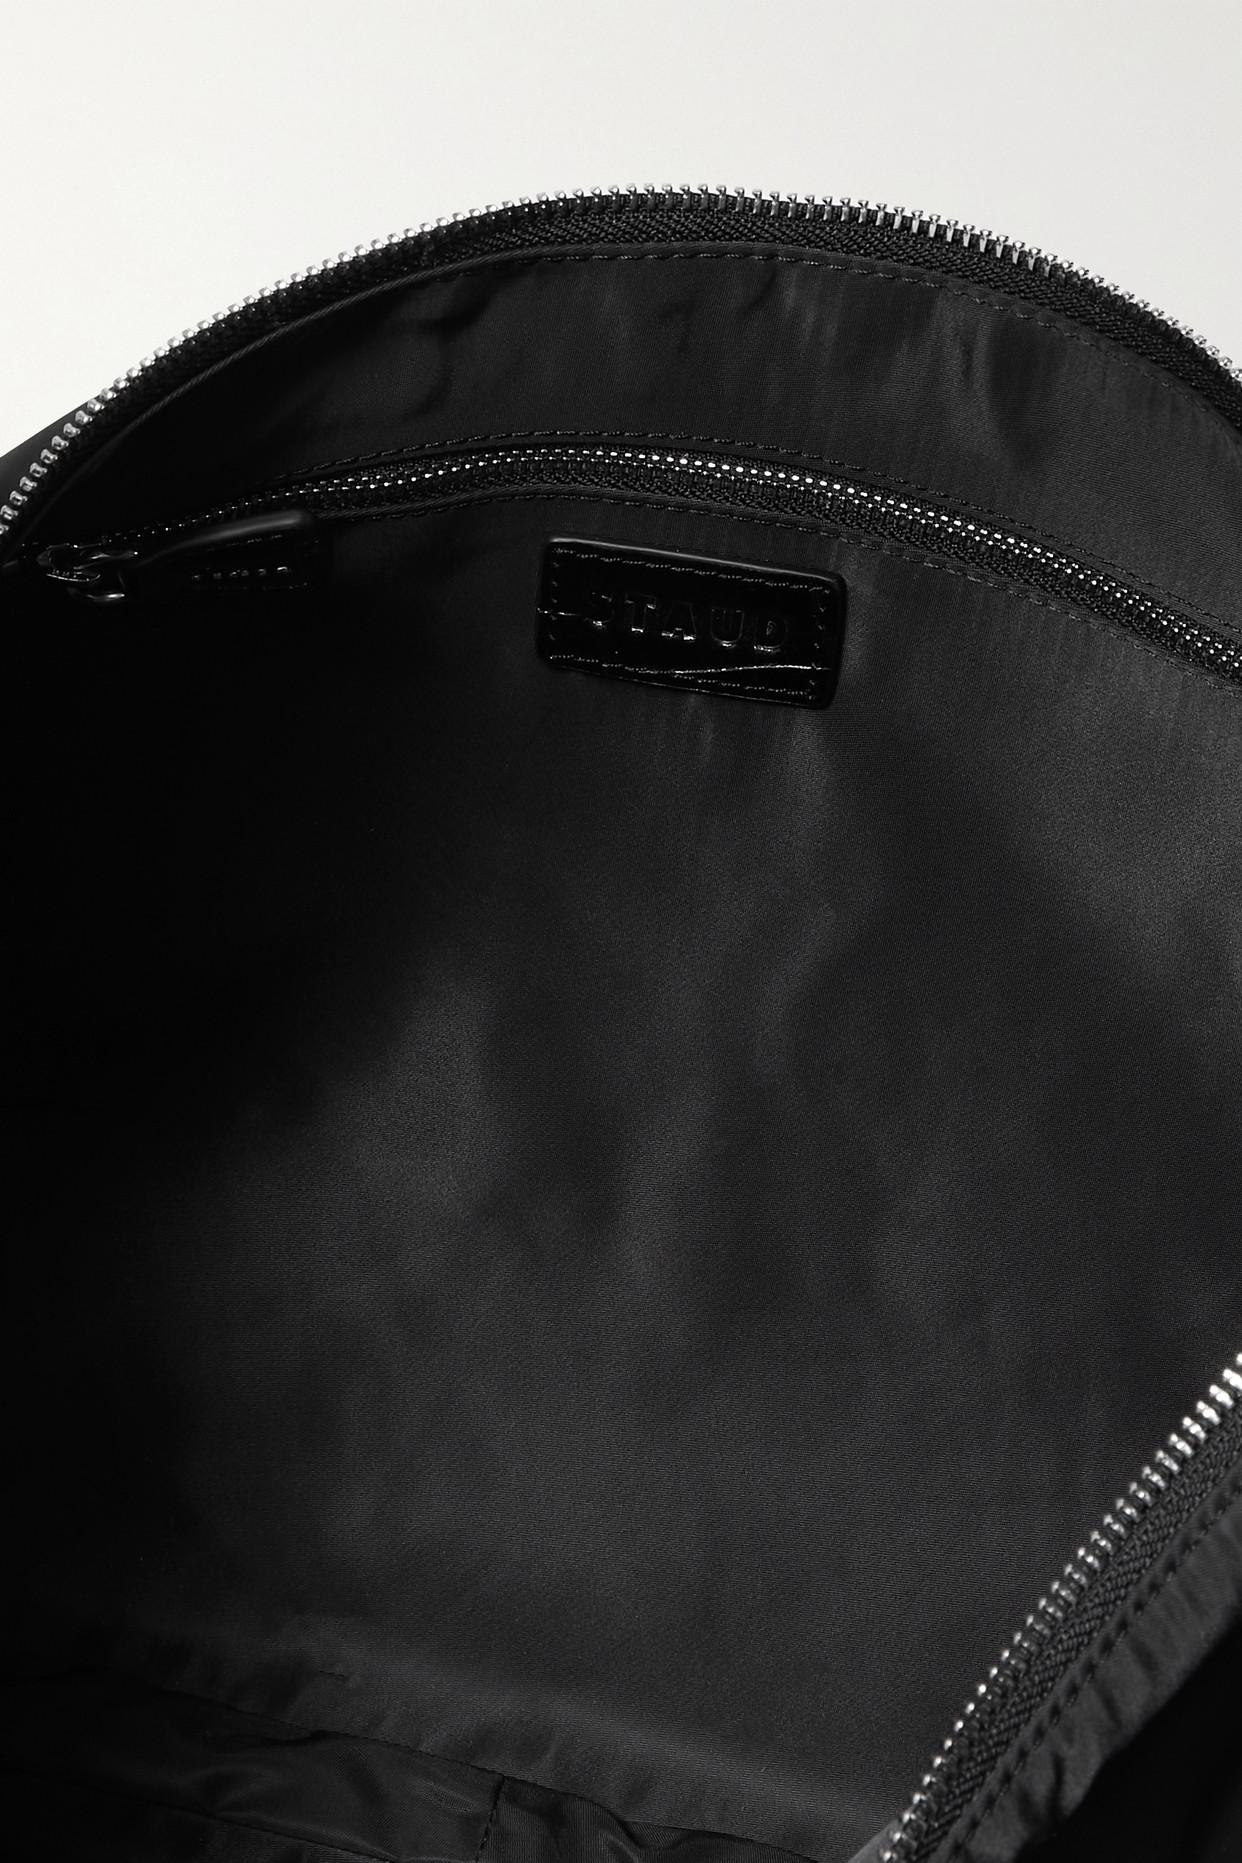 STAUD Sasha Large Leather-trimmed Nylon Shoulder Bag in Black